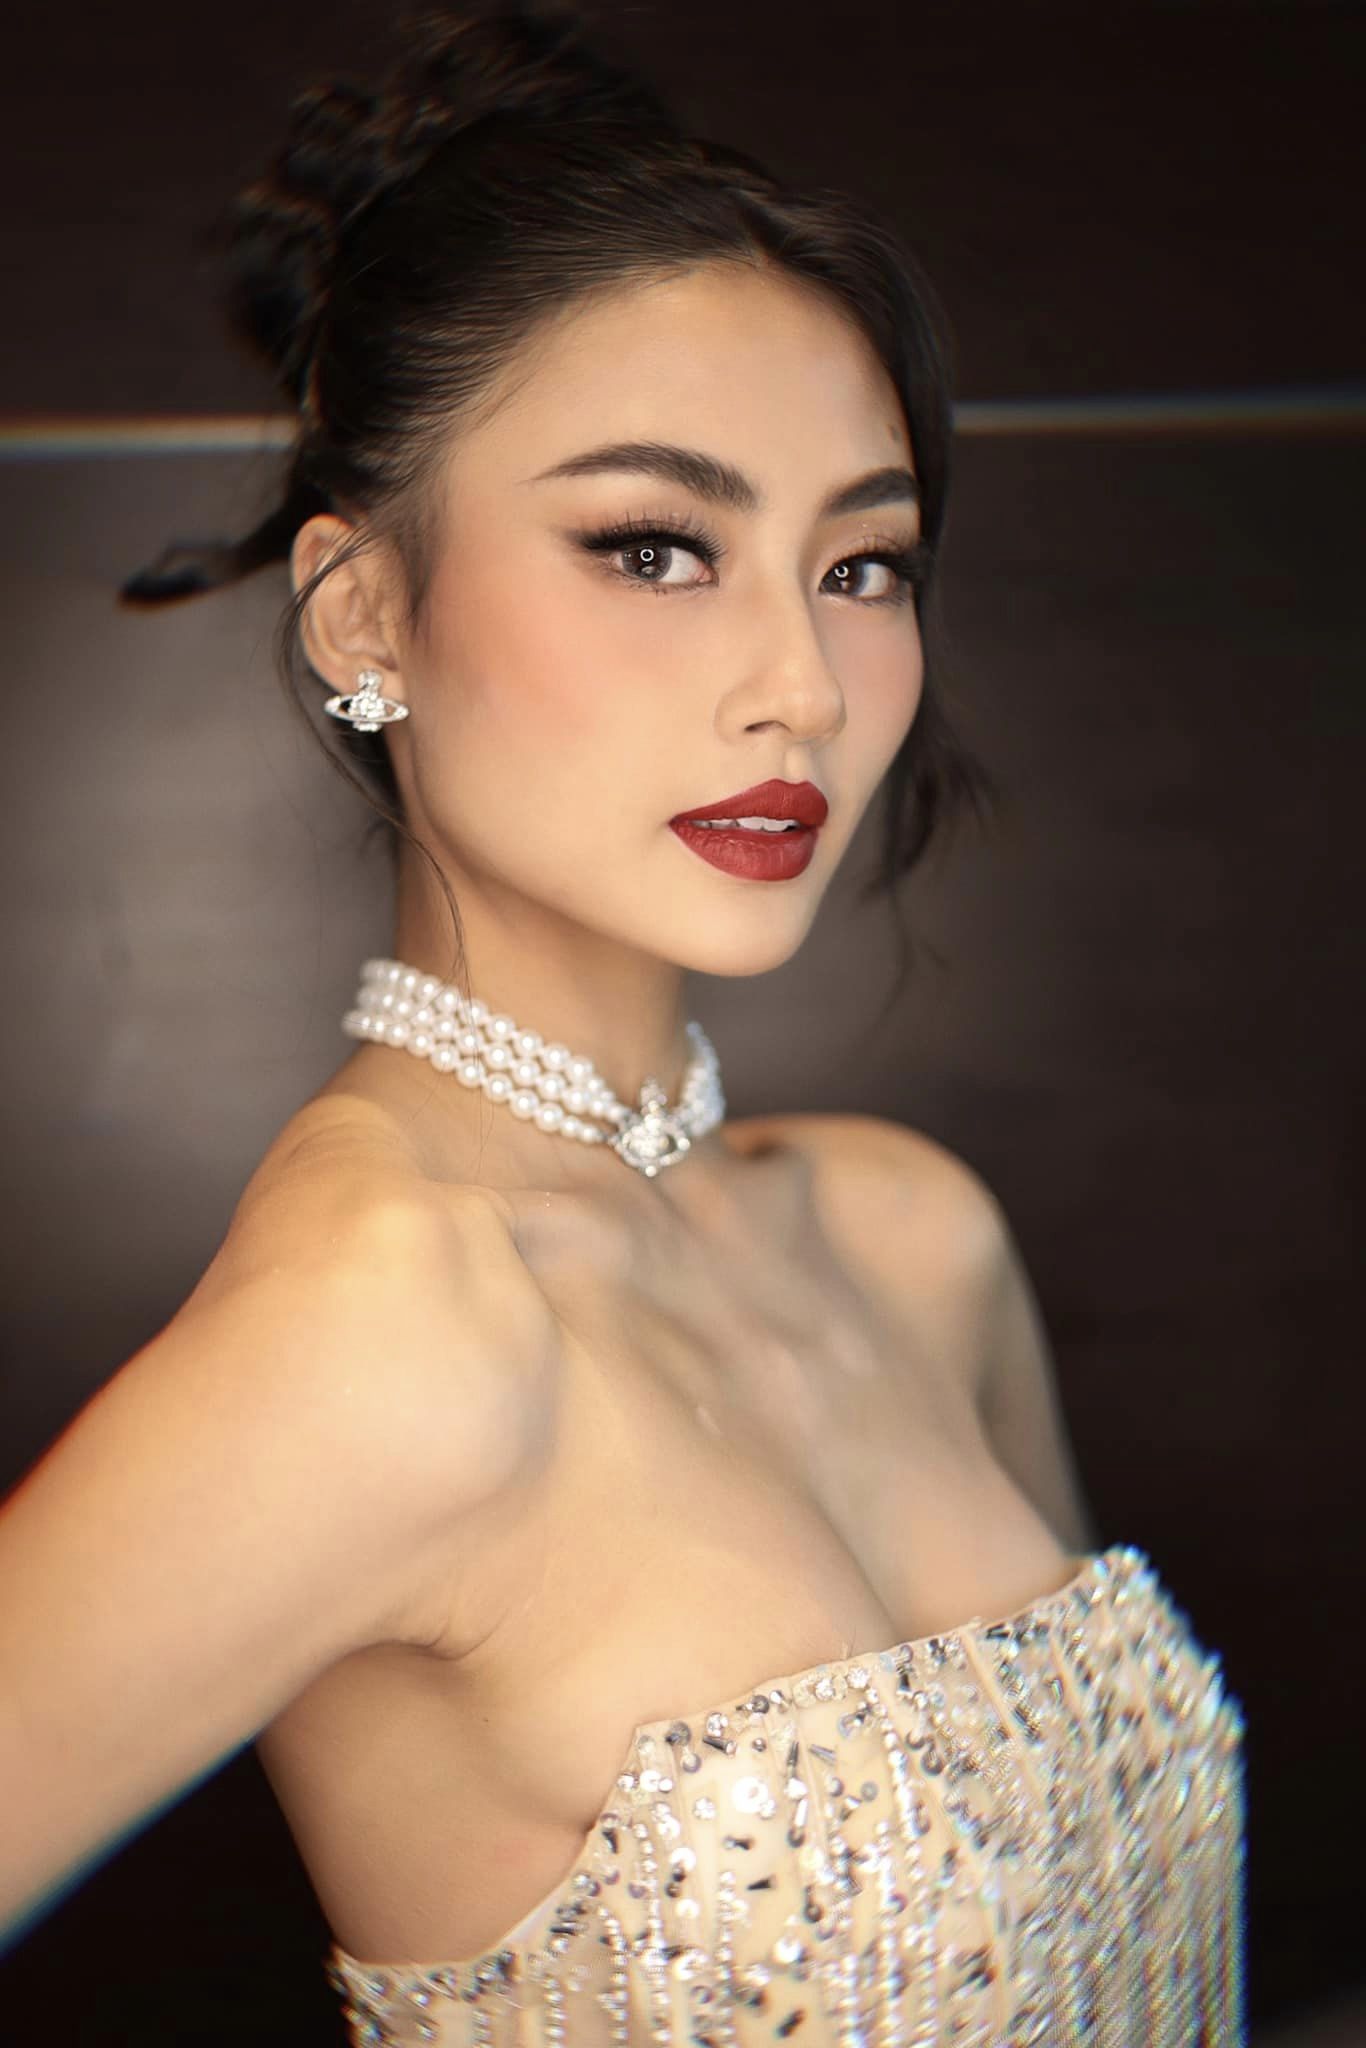 Tân Hoa hậu Hoàn vũ Việt Nam sinh năm 2001: Cựu học sinh trường chuyên, Á quân một cuộc thi nổi tiếng và là trò cưng của Vũ Thu Phương - ảnh 4